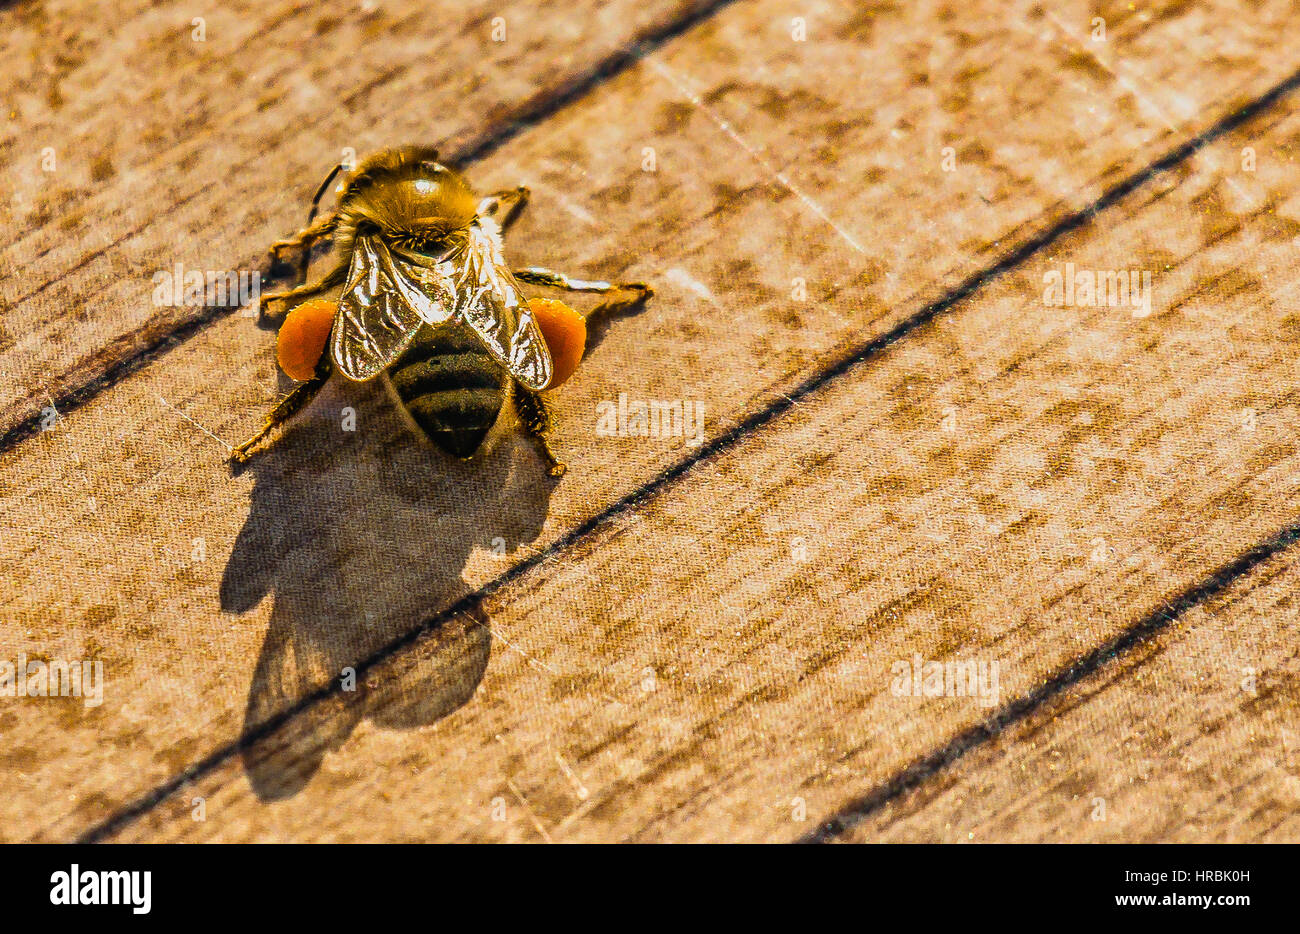 bestäubten Biene auf der Bank. Polen Toplamis ari Stockfoto